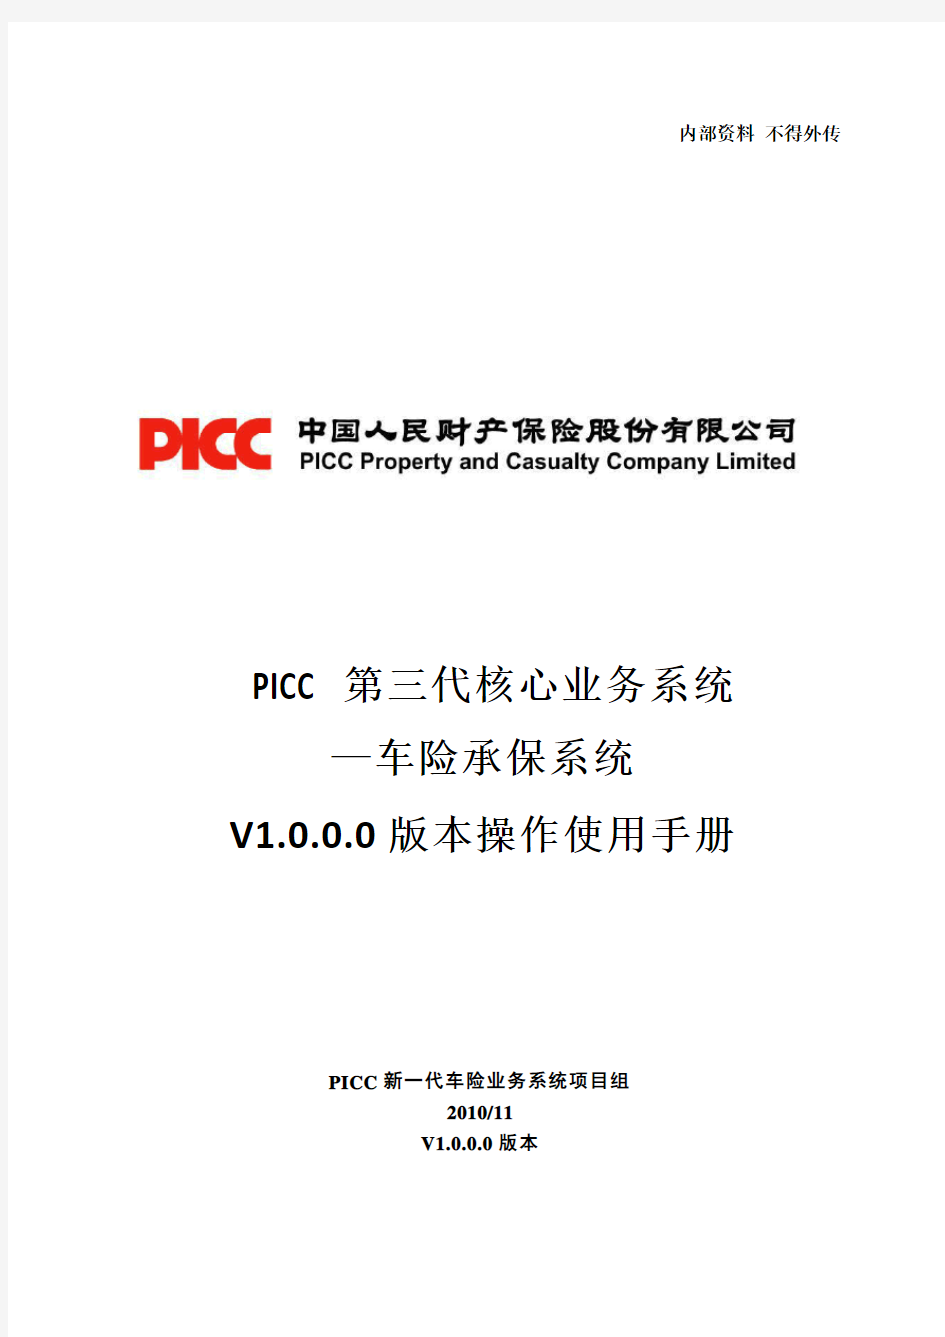 PICC第三代核心业务系统-车险承保系统V1[1][1].0.0.0版本操作使用手册